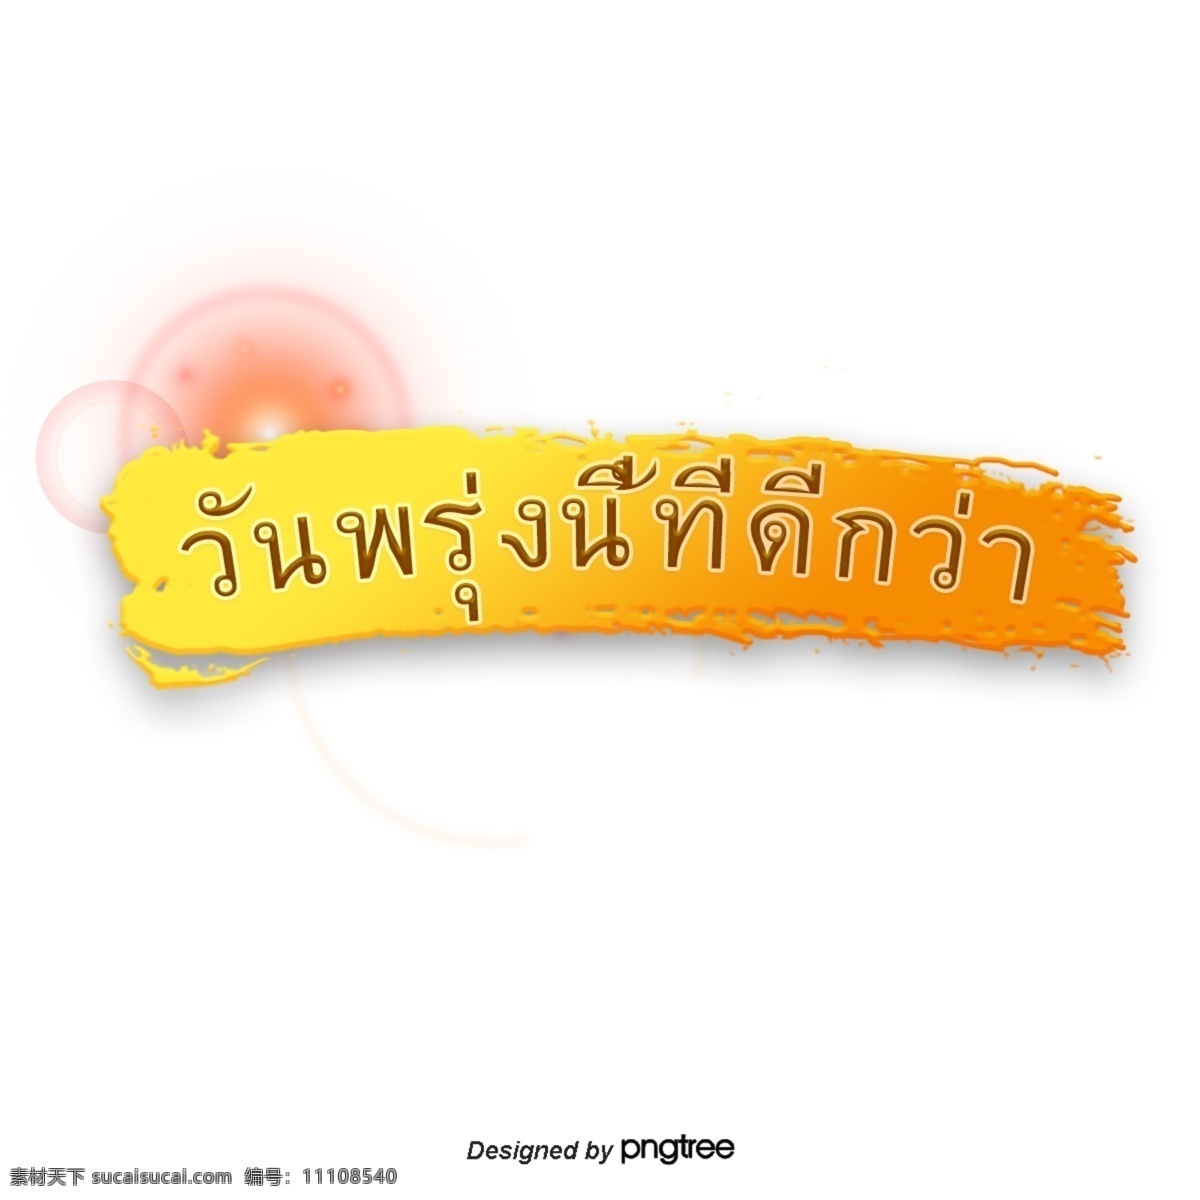 泰国 字母 字体 共创 美好 明天 美好的明天 金钱